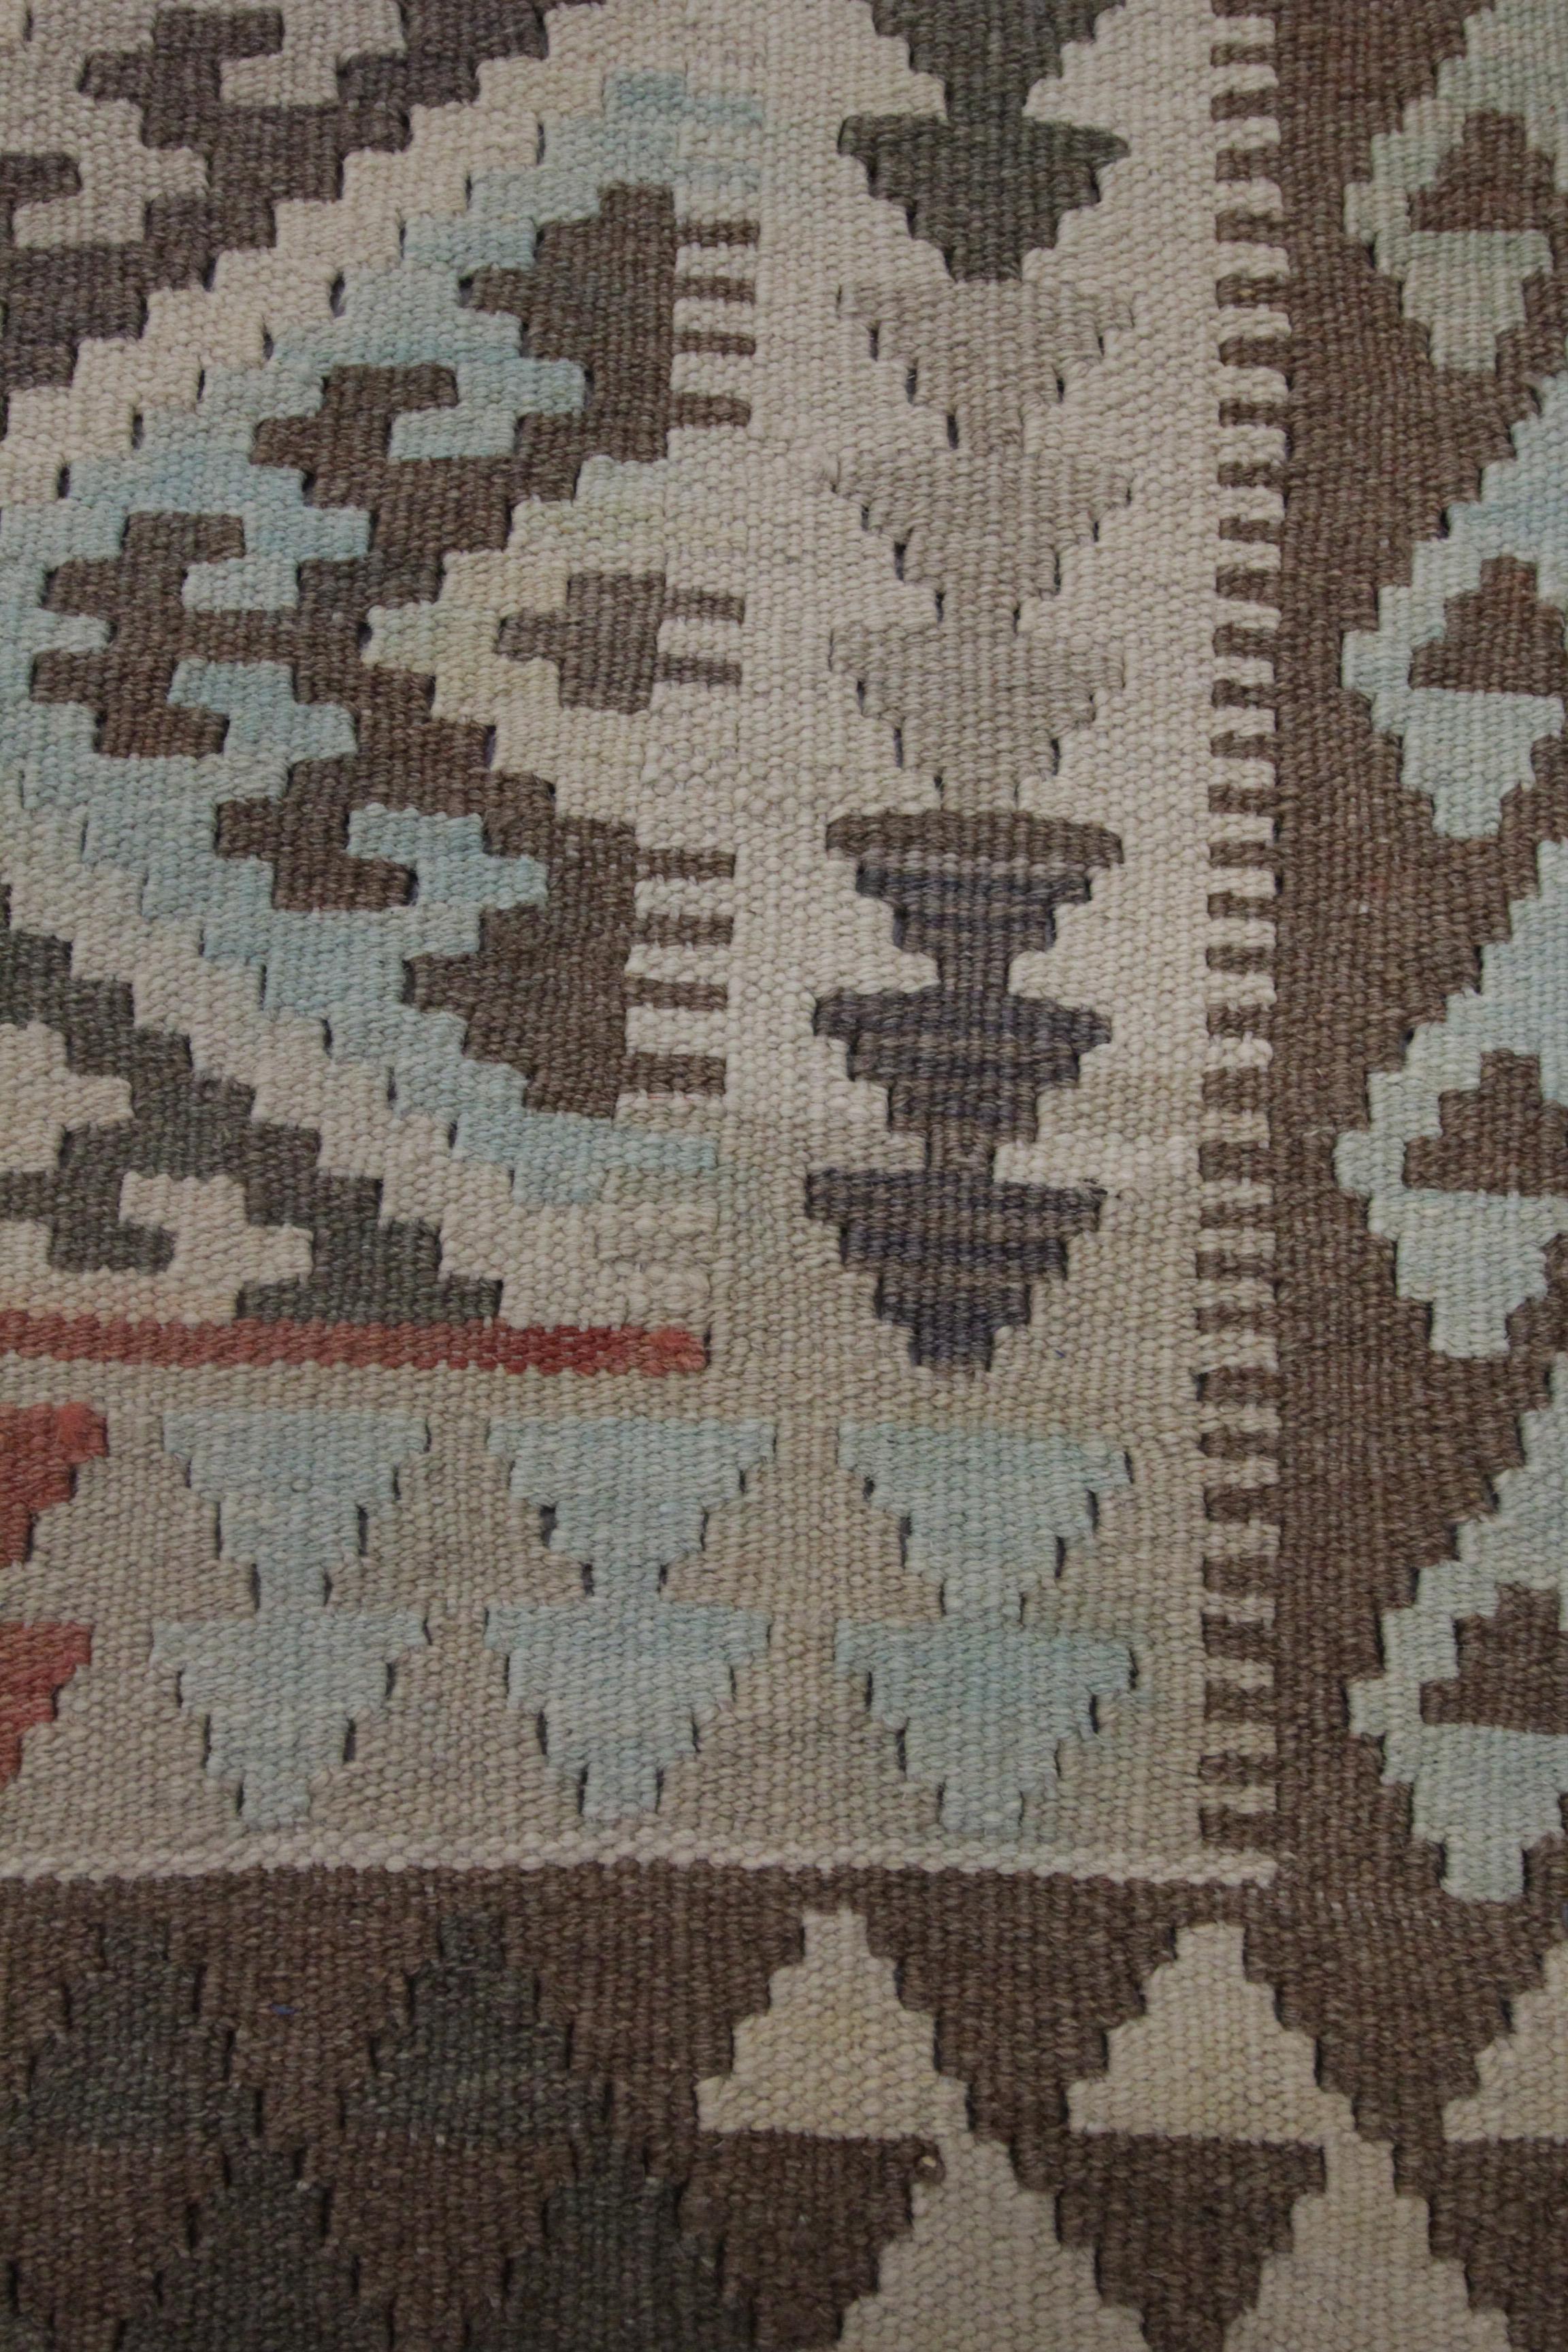 Cet audacieux tapis Kilim traditionnel en laine est un Kilim afghan tissé à la main construit au début du 21e siècle, vers 2010-15. Le dessin présente un motif répétitif composé de médaillons à crochets aux accents bleus, beiges et bruns. Une